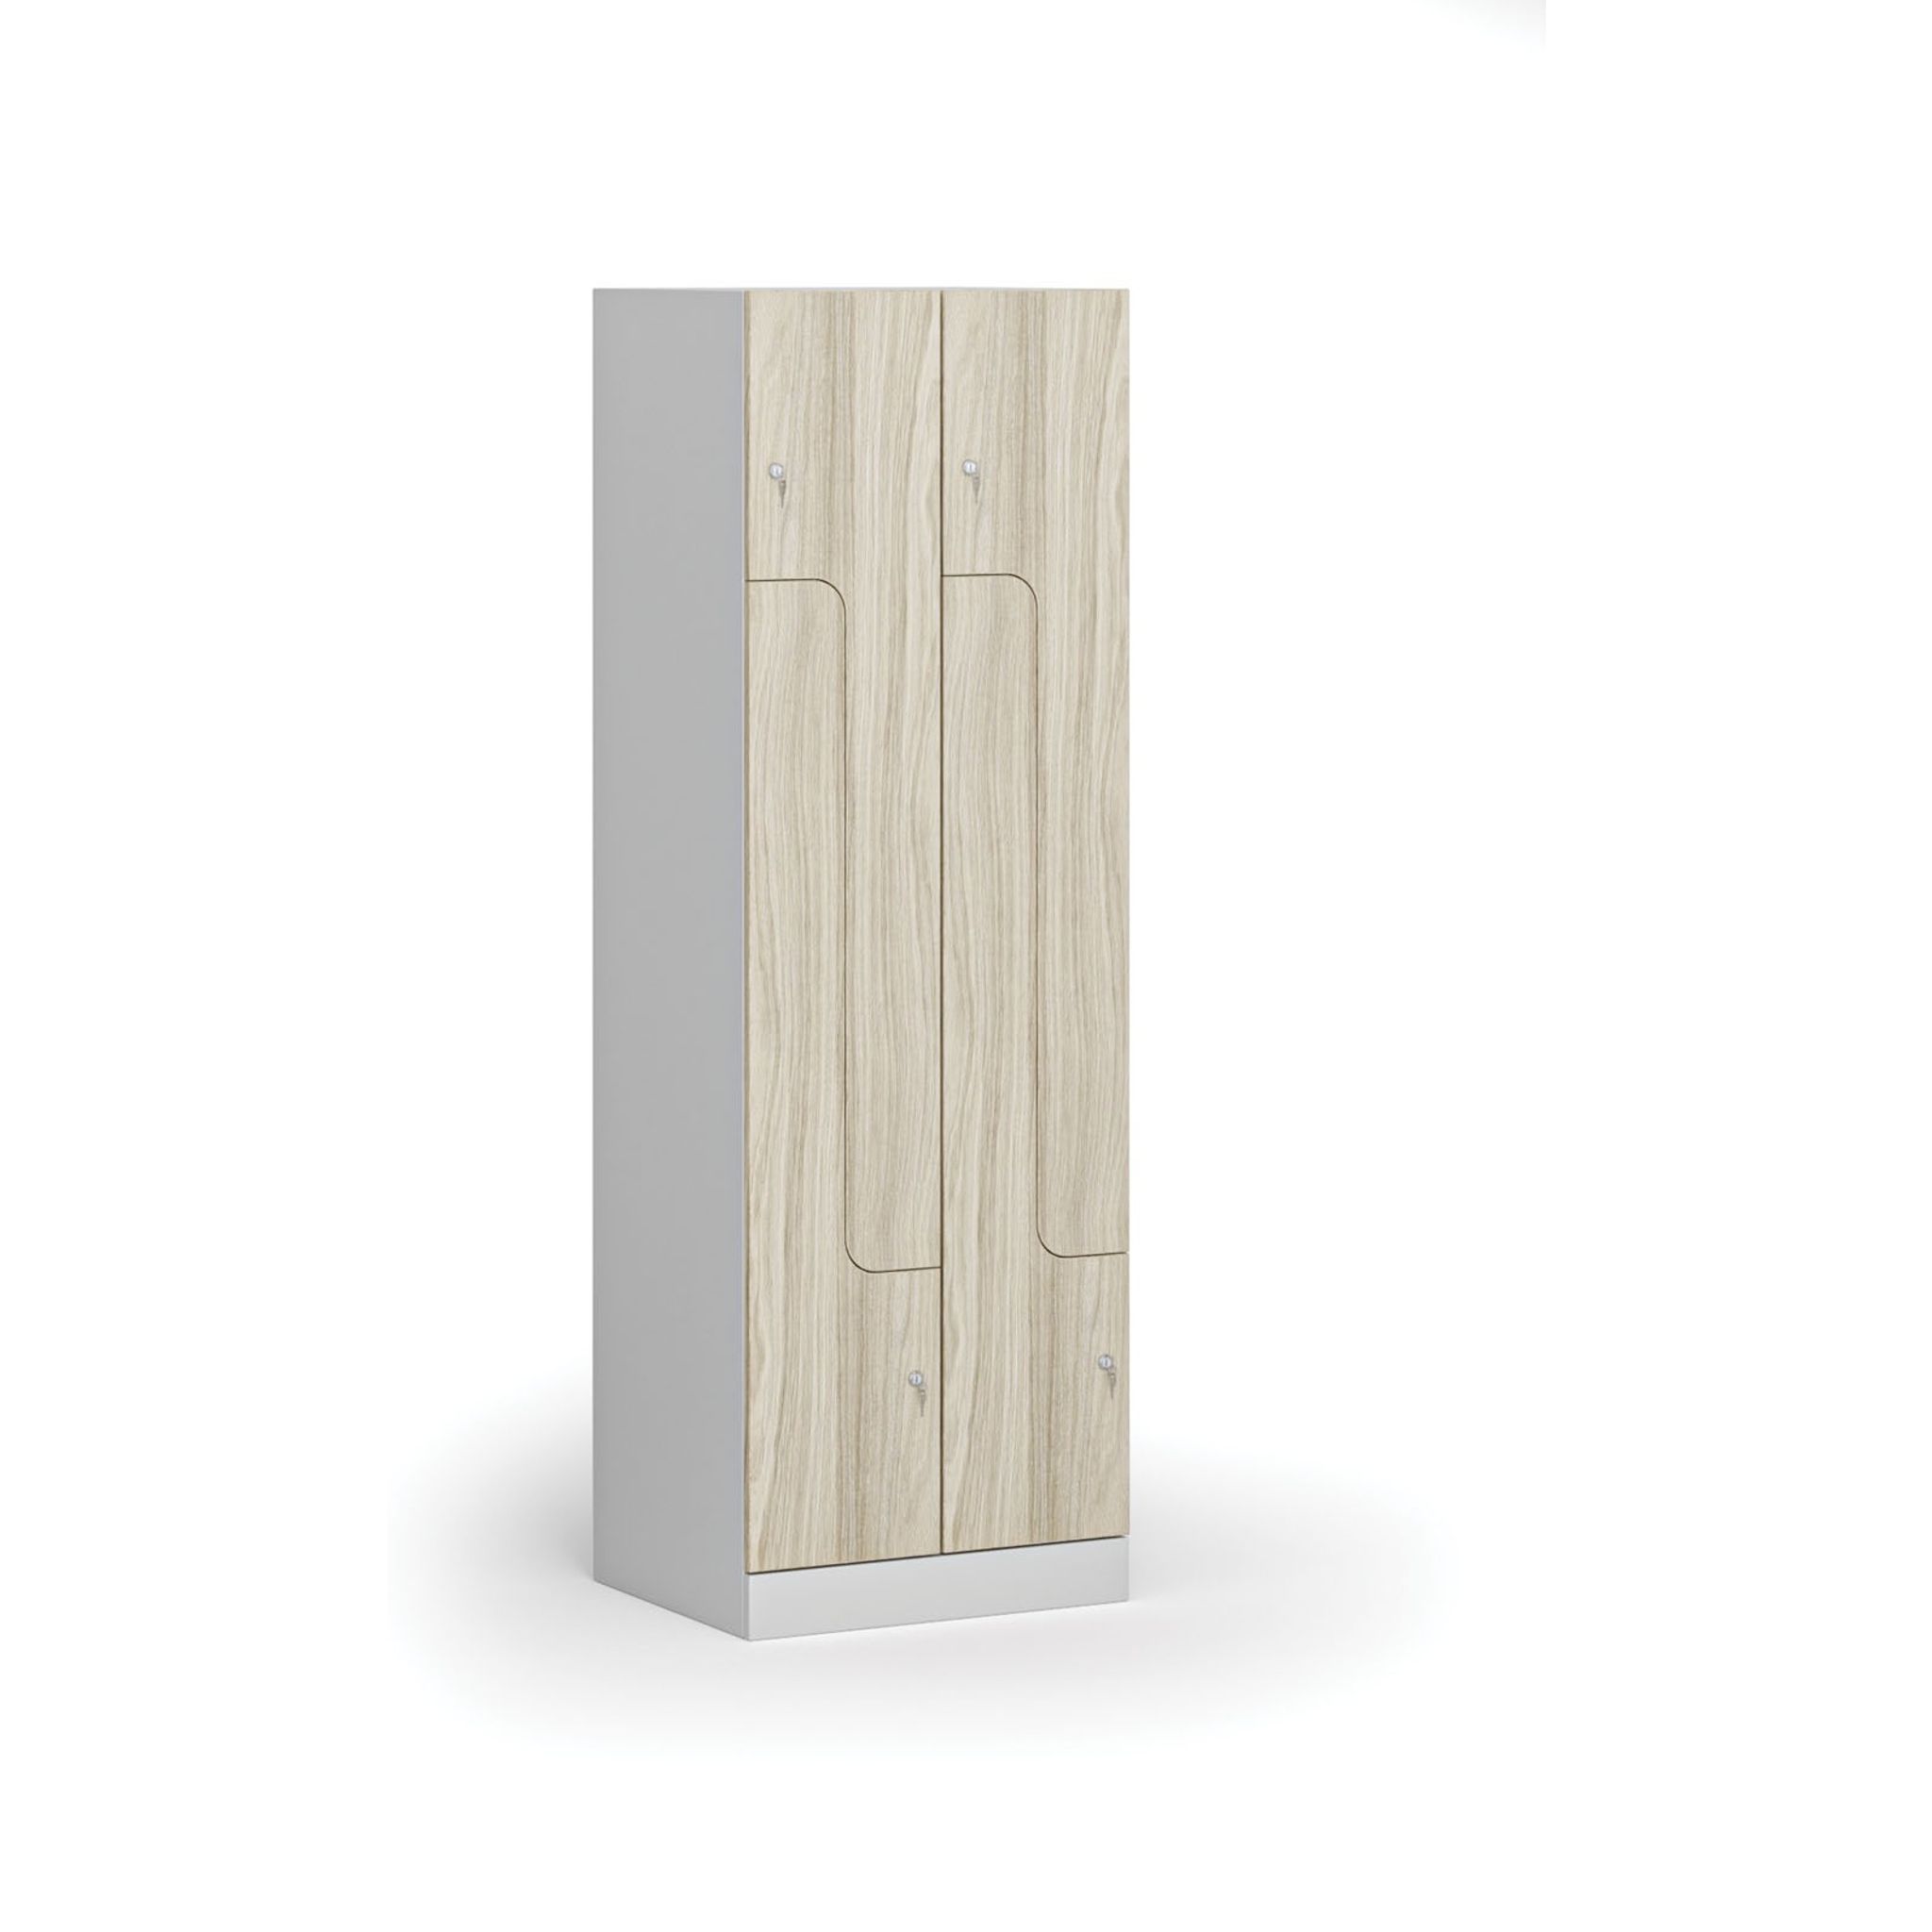 Szafka ubraniowa metalowa Z, 4 szafki, 1850 x 600 x 500 mm, zamek cylindryczny, drzwi laminowane, dąb naturalny